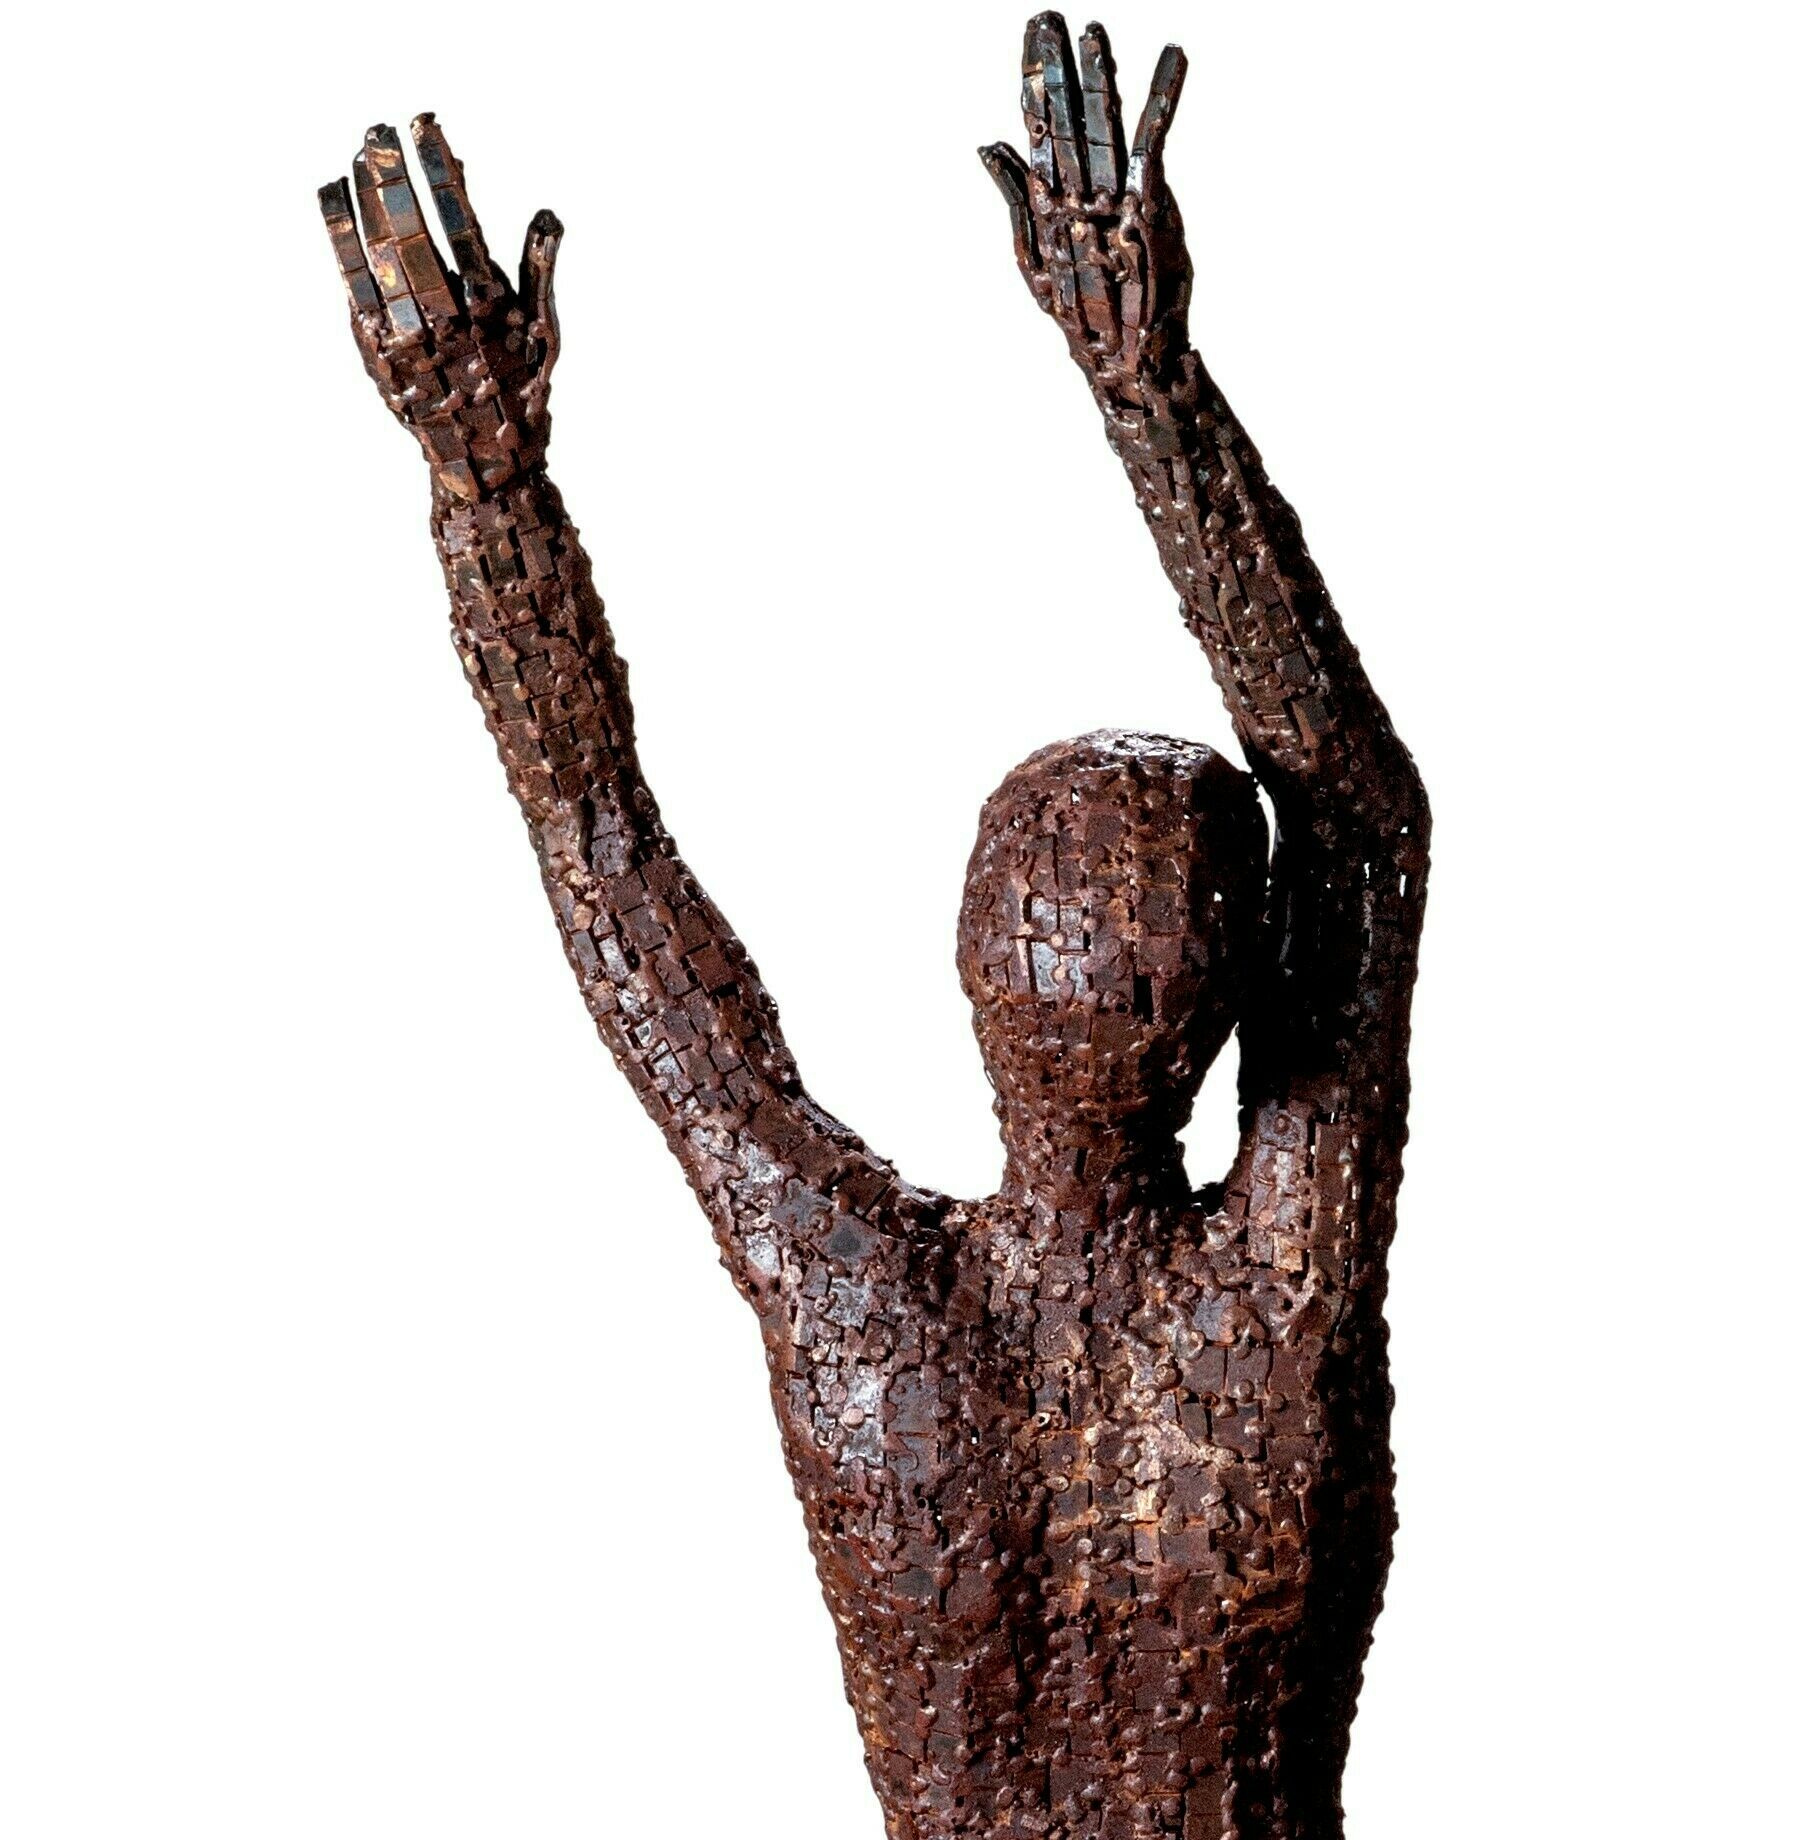 Sculpture "SCULPTURE MIN" (2021)